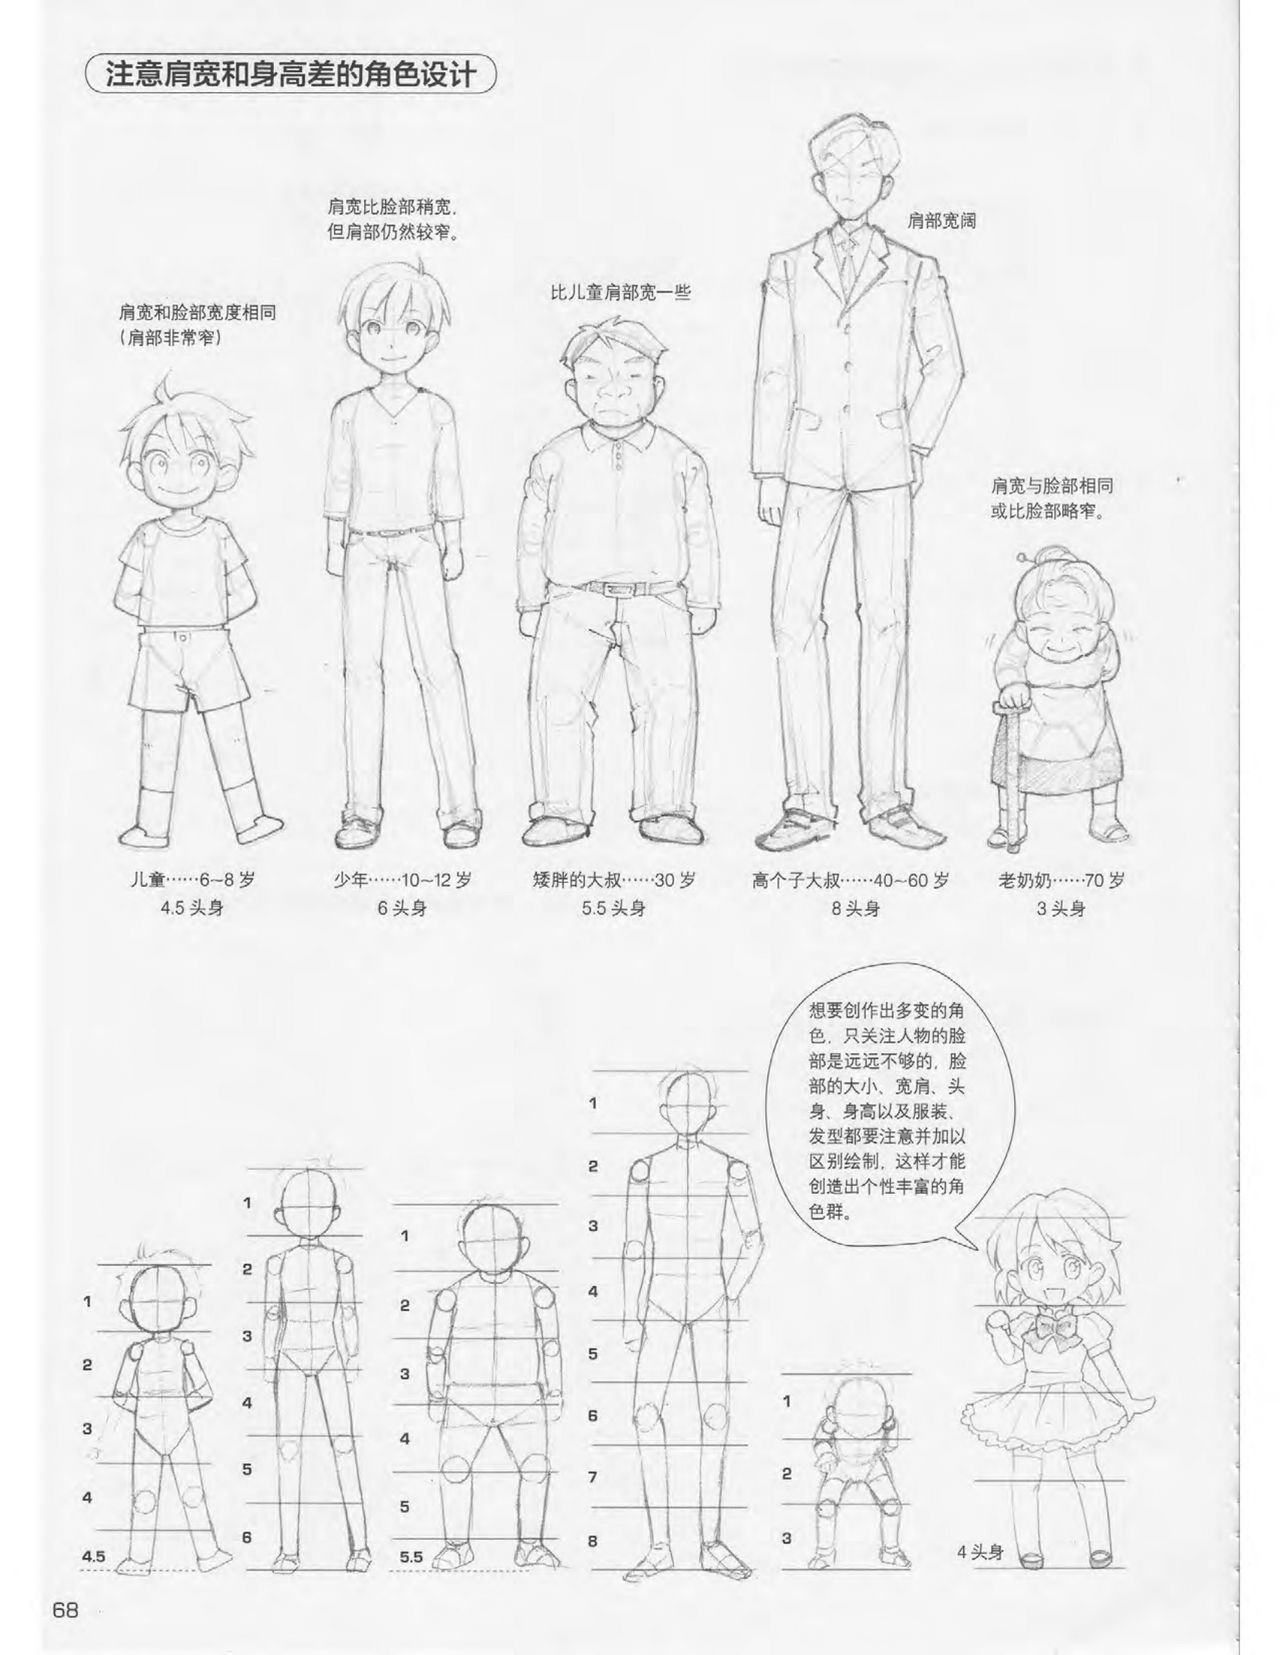 Japanese Manga Master Lecture 3: Lin Akira and Kakumaru Maru Talk About Glamorous Character Modeling 68